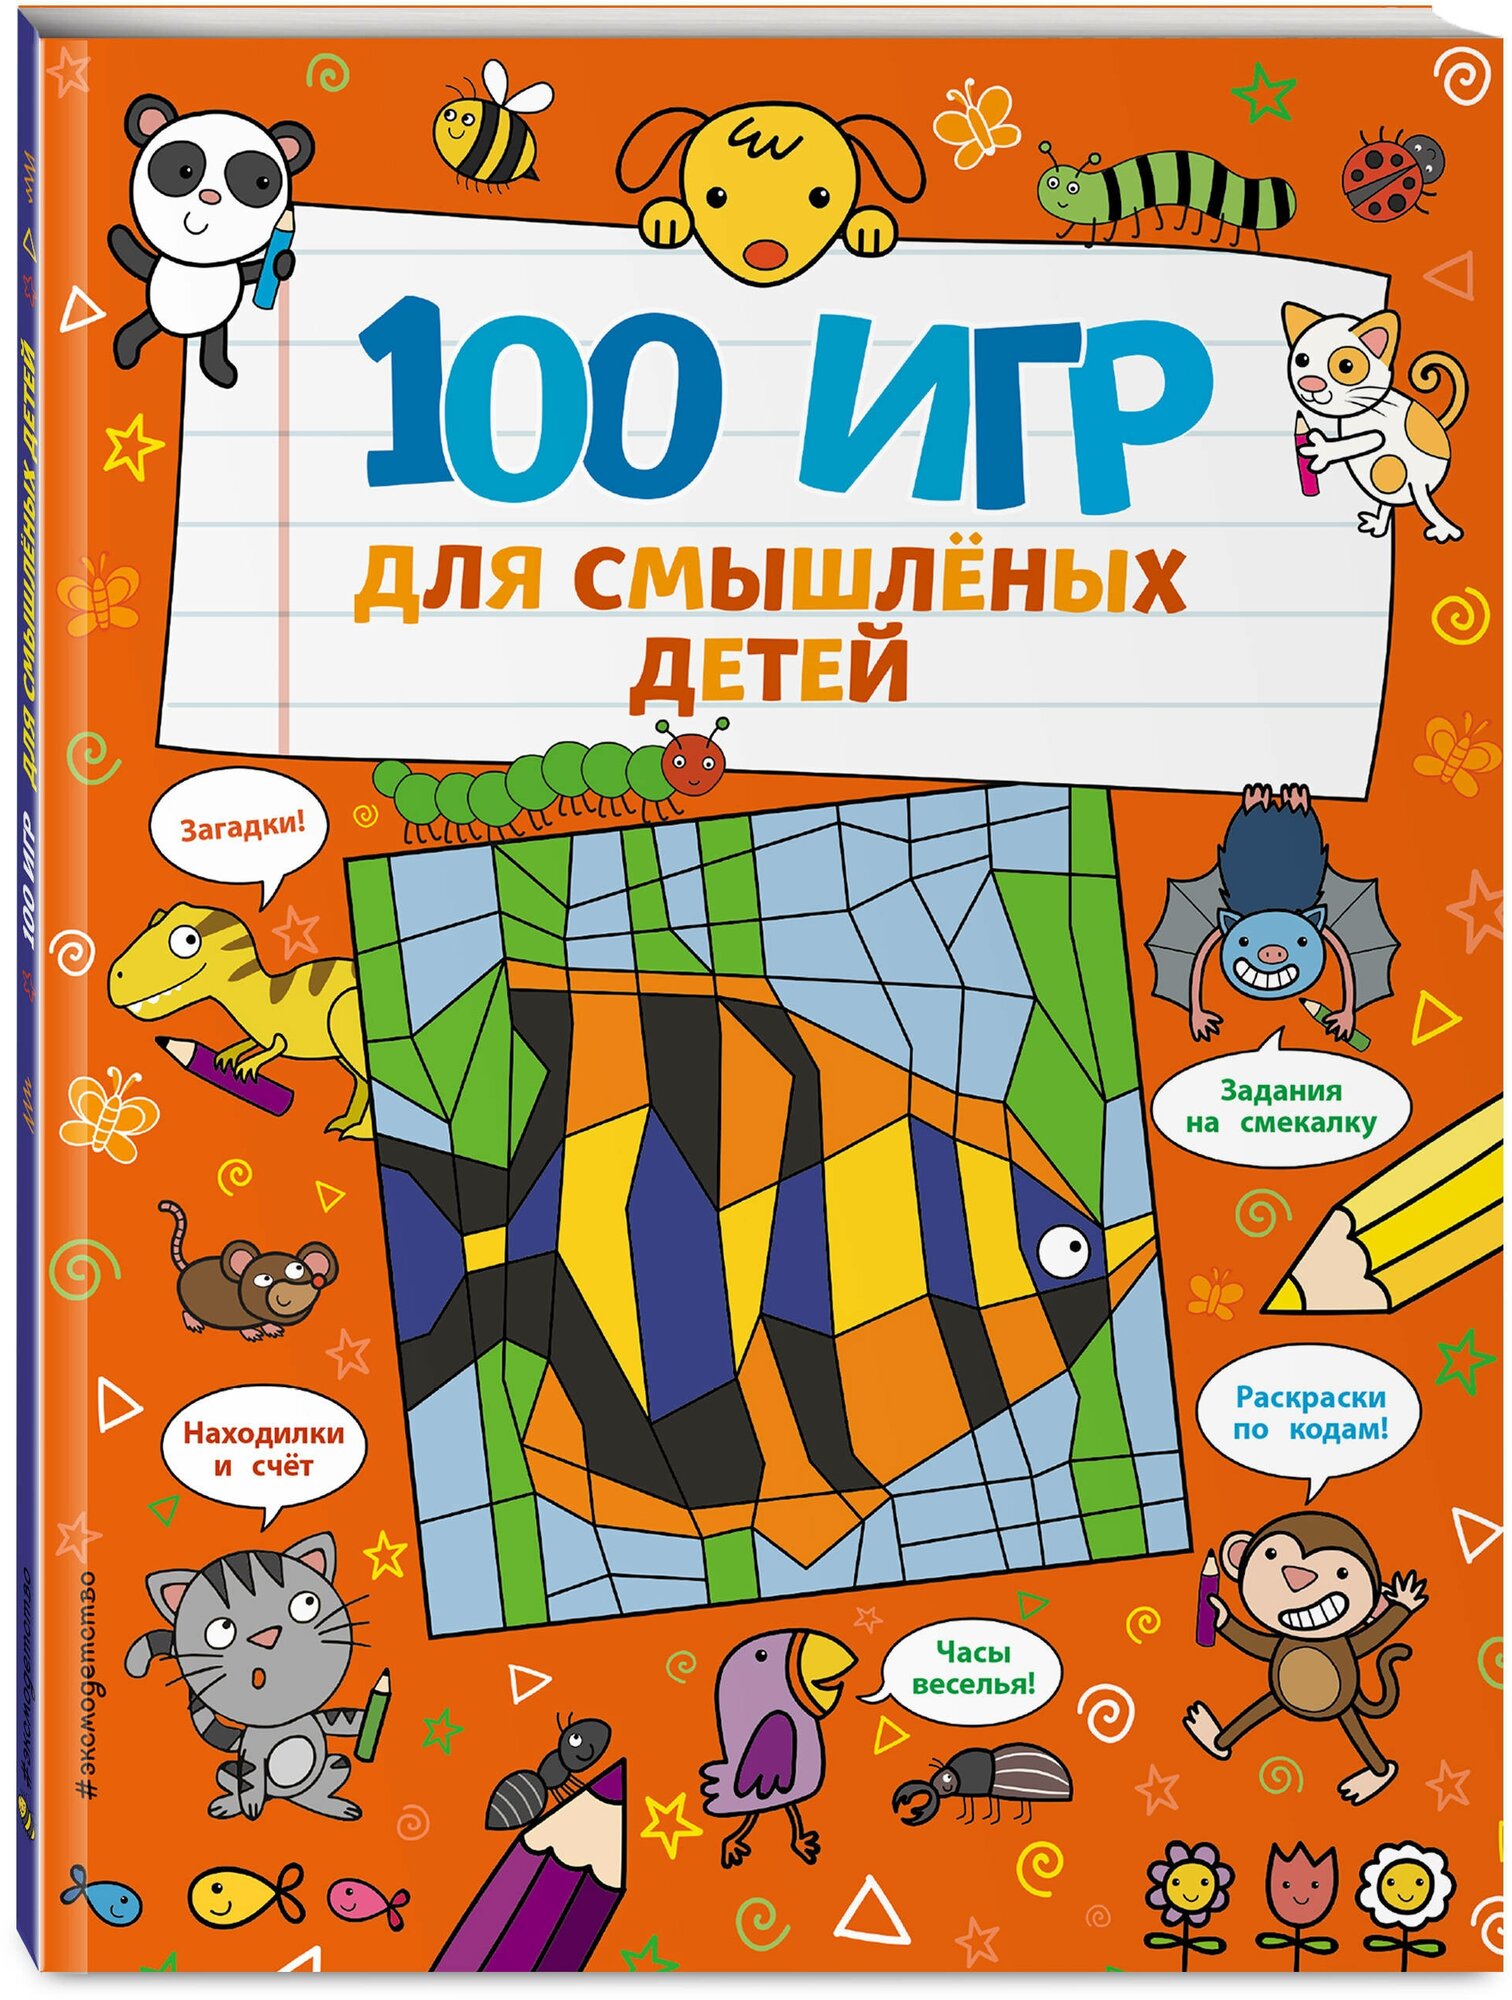 Брэтт А. 100 игр для смышлёных детей